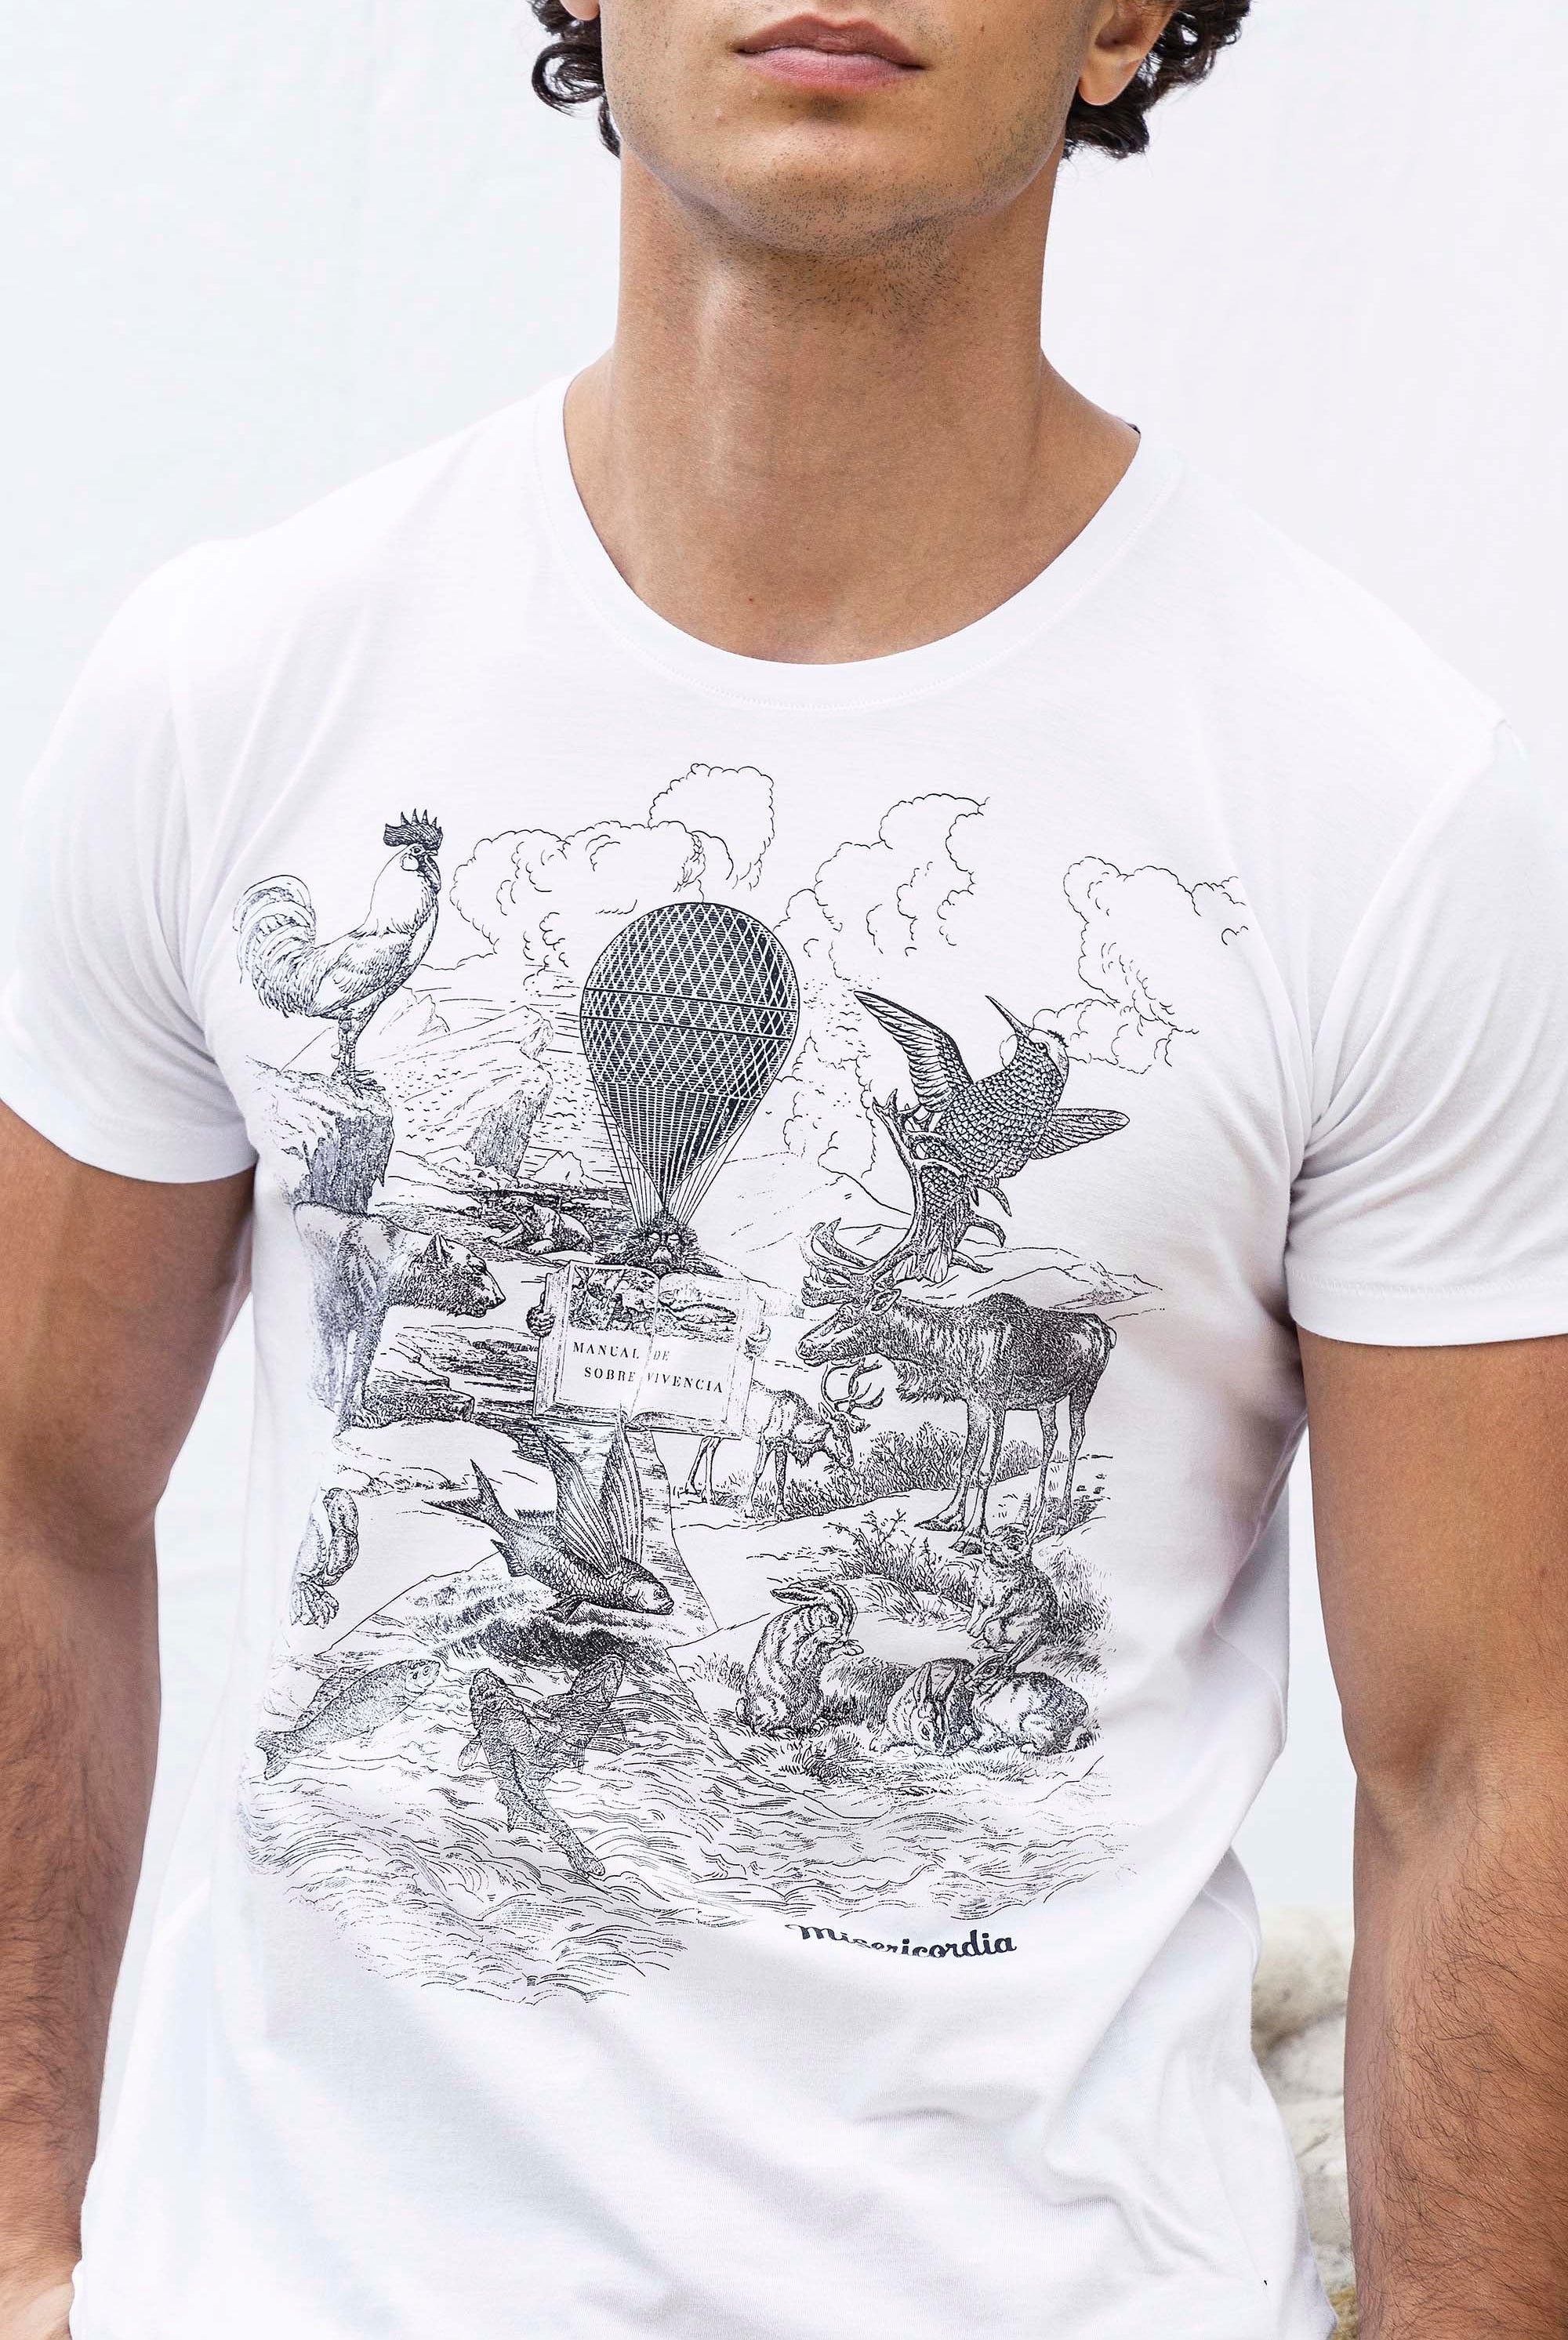 T-Shirt Querido Animal Blanc t-shirts pour homme simples, polyvalents pour toutes les occasions